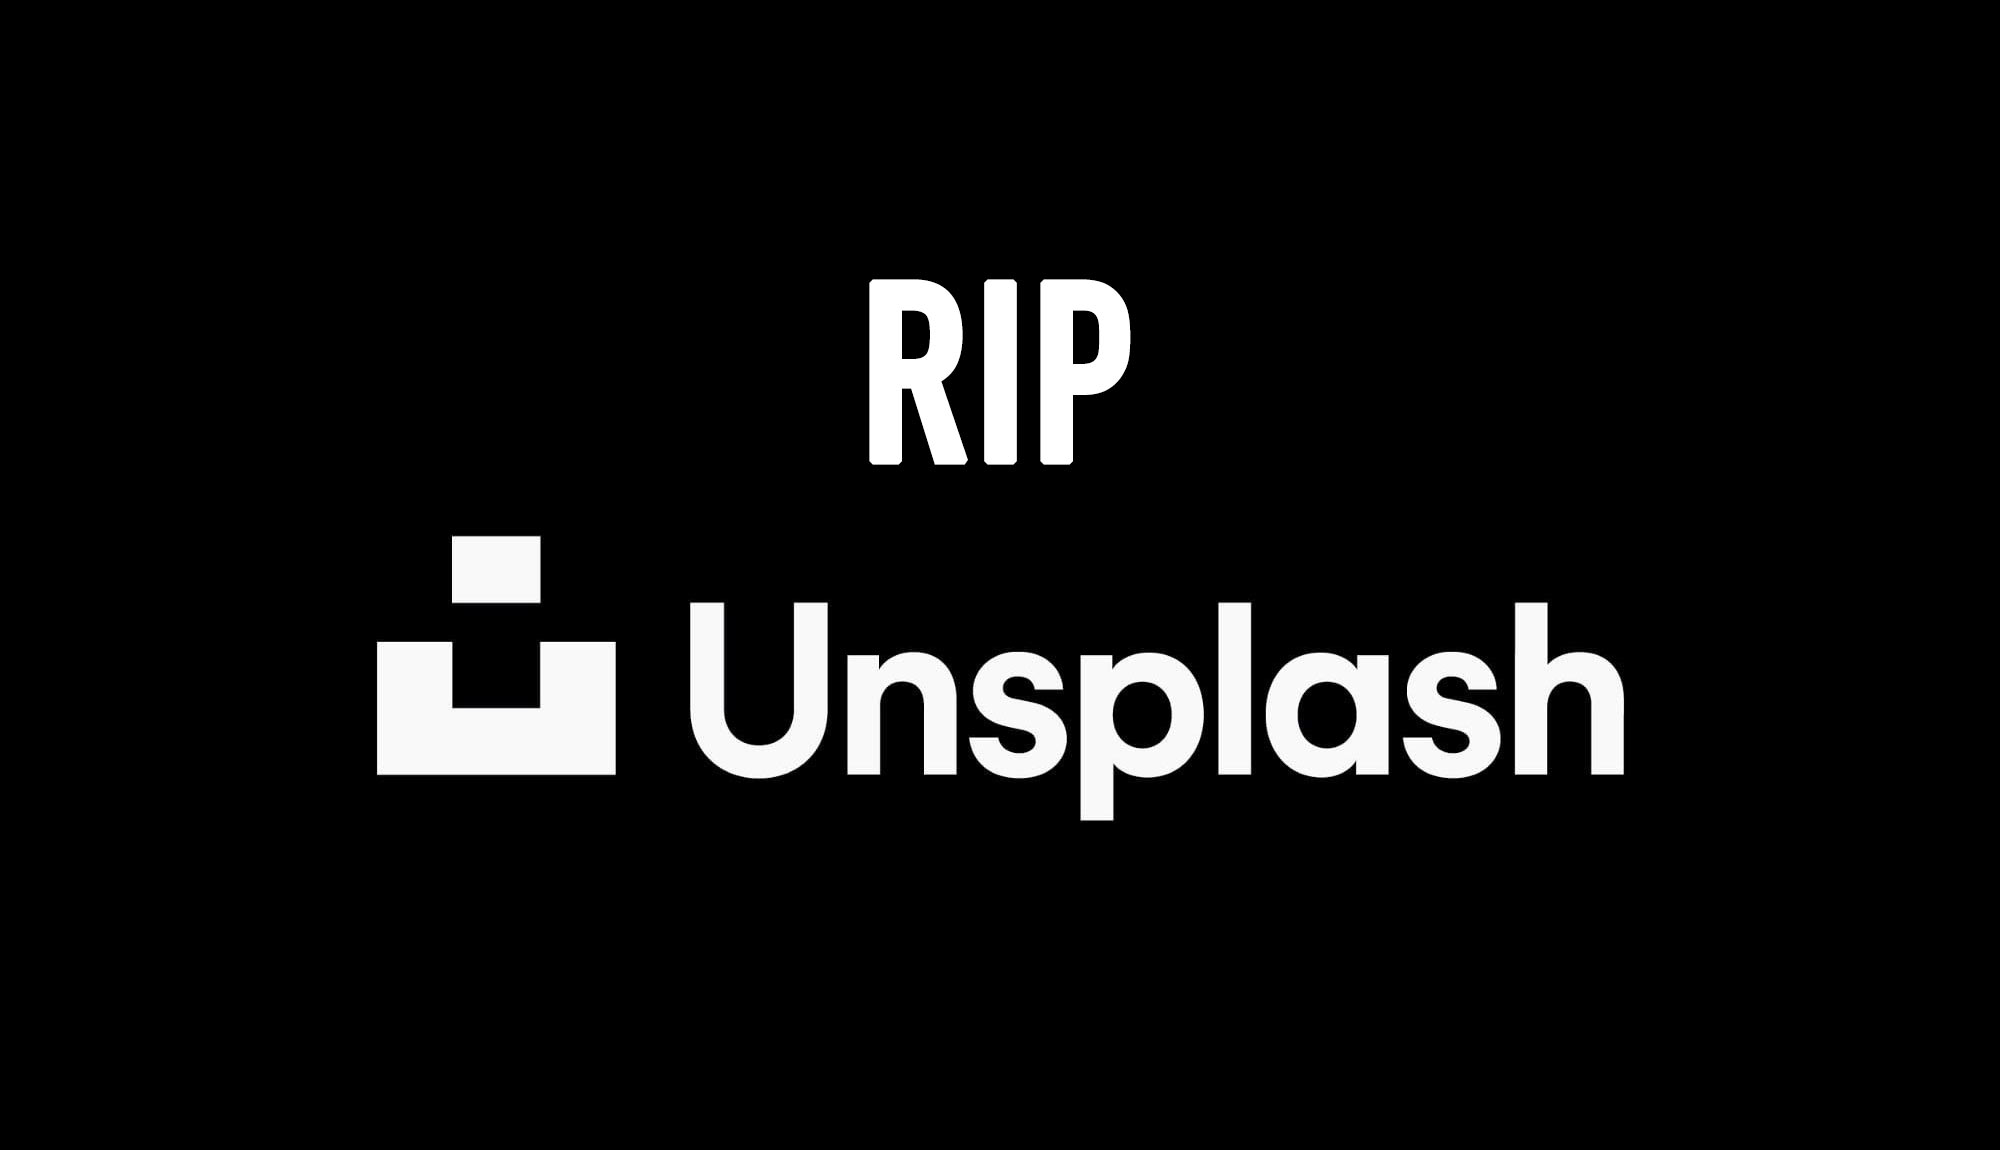 RIP Unsplash – Unsplash von Getty Images übernommen